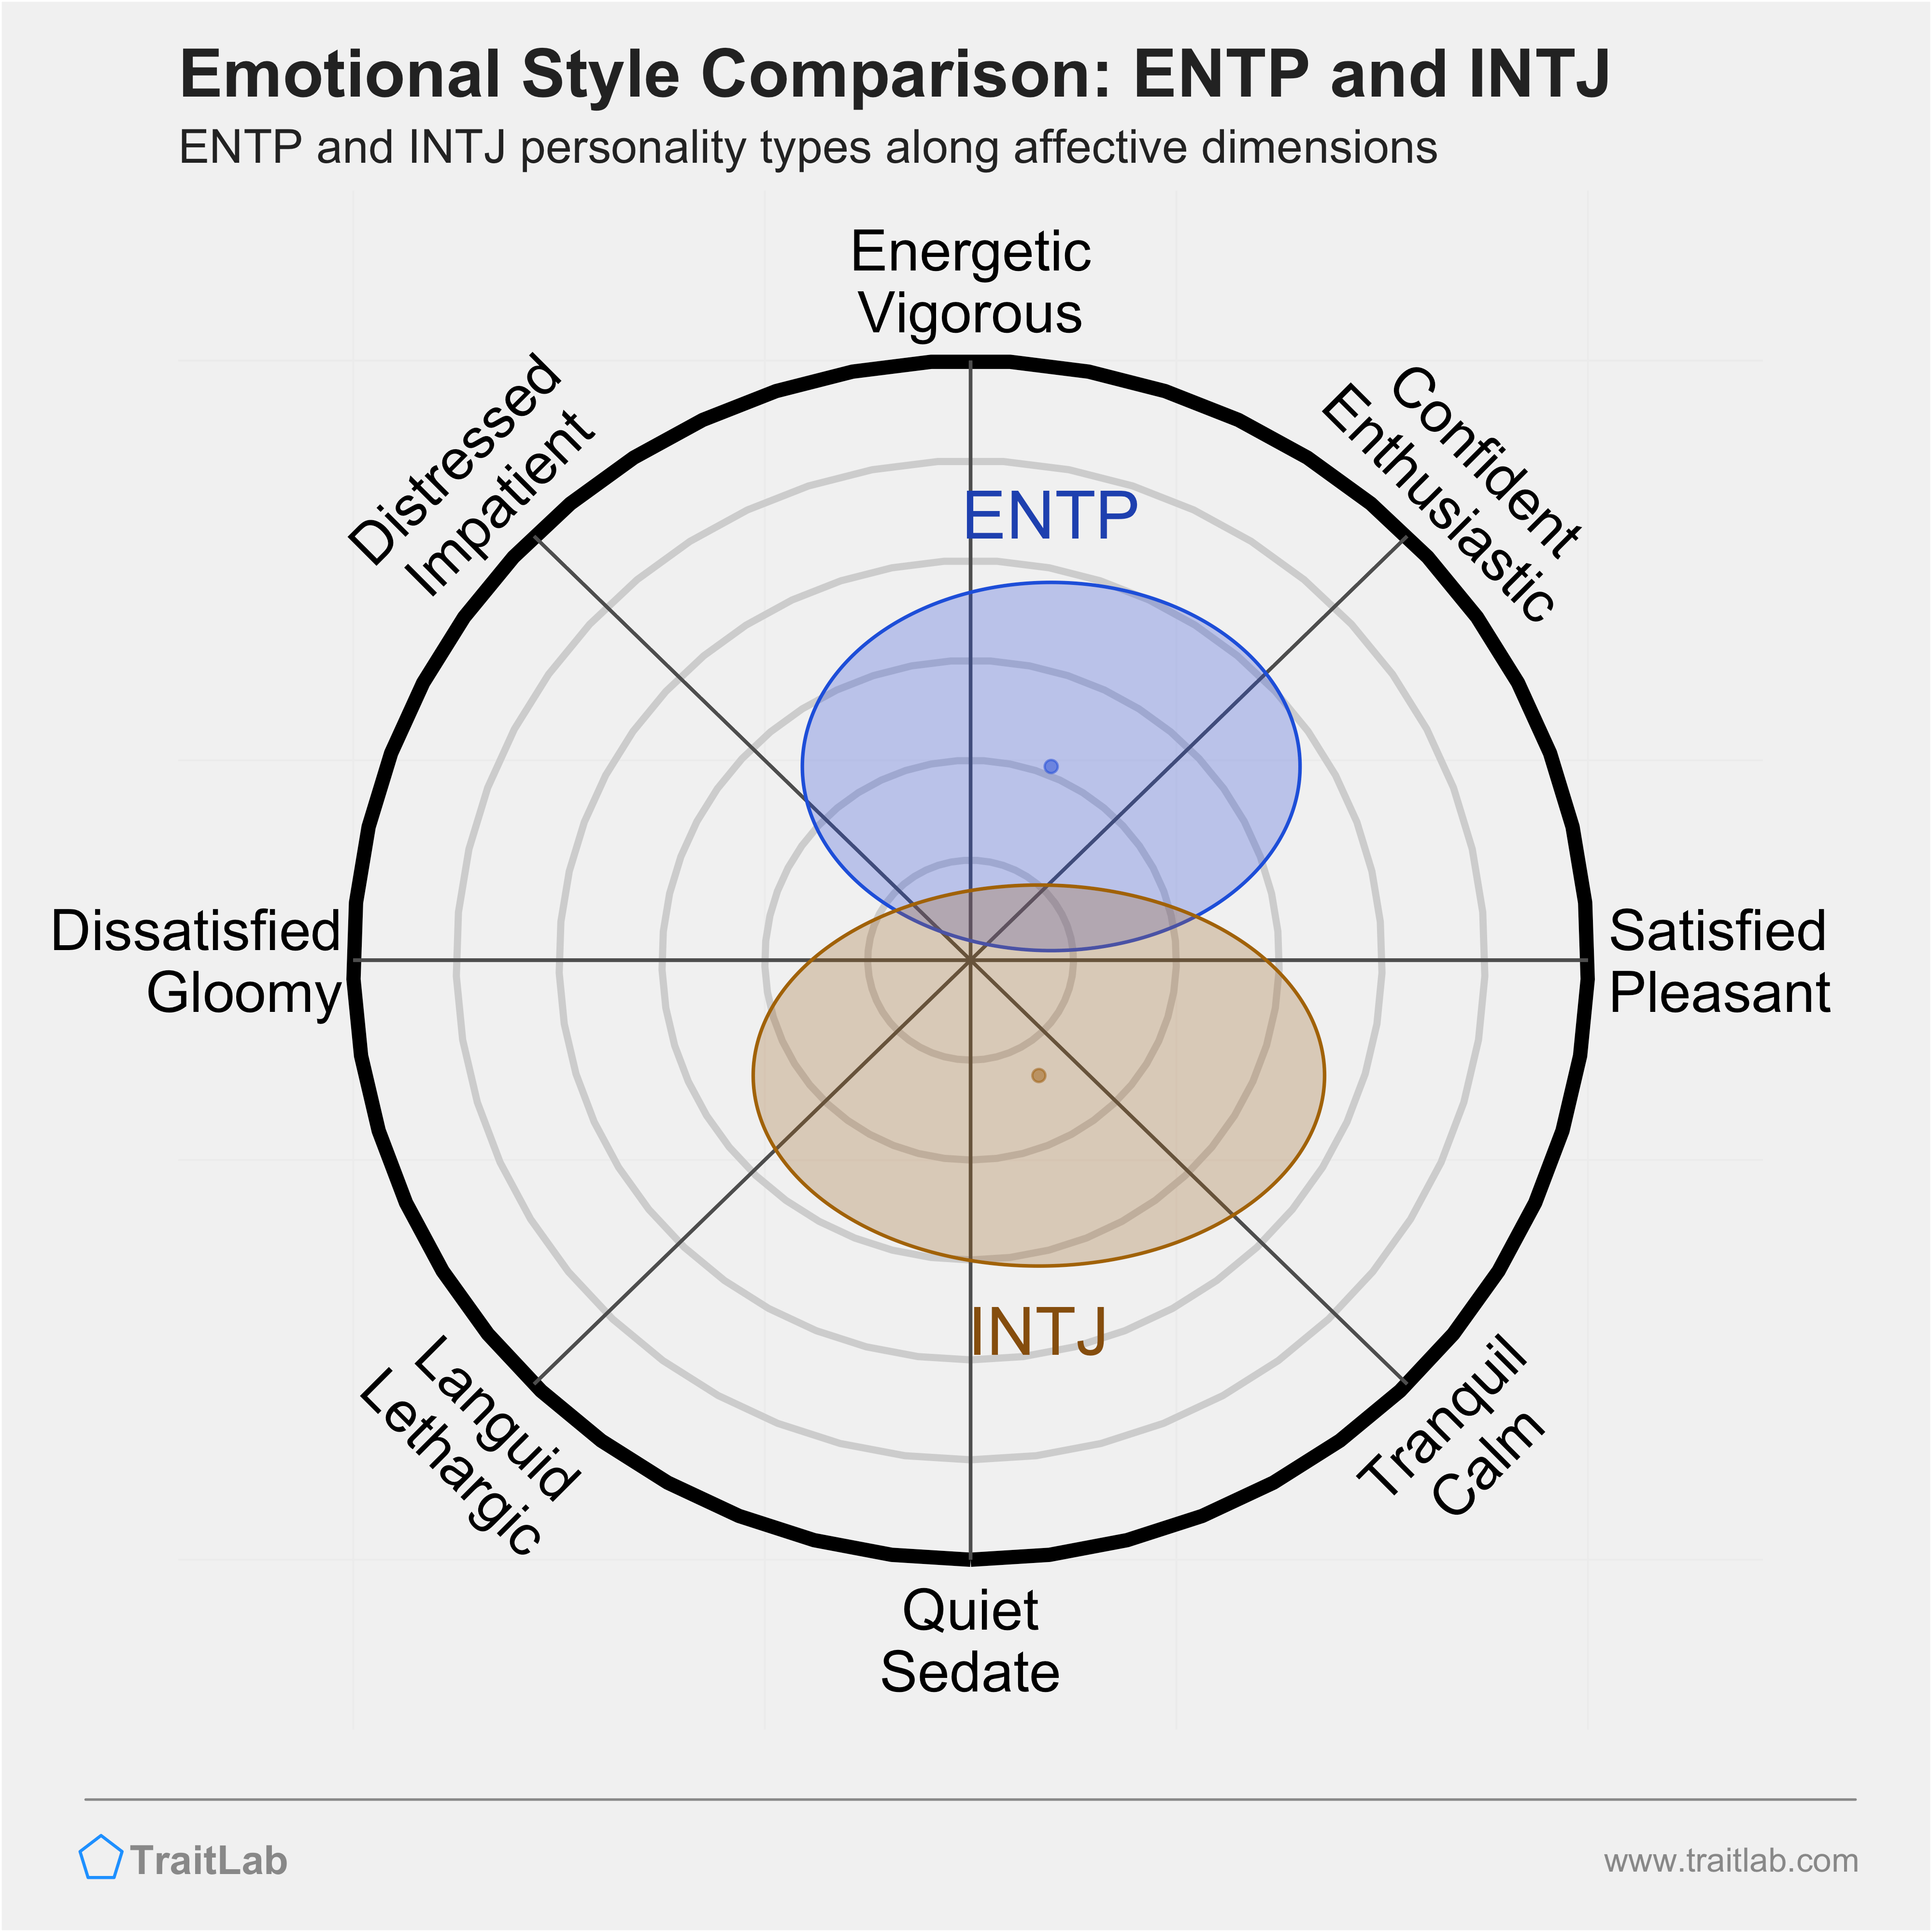 ENTP and INTJ comparison across emotional (affective) dimensions